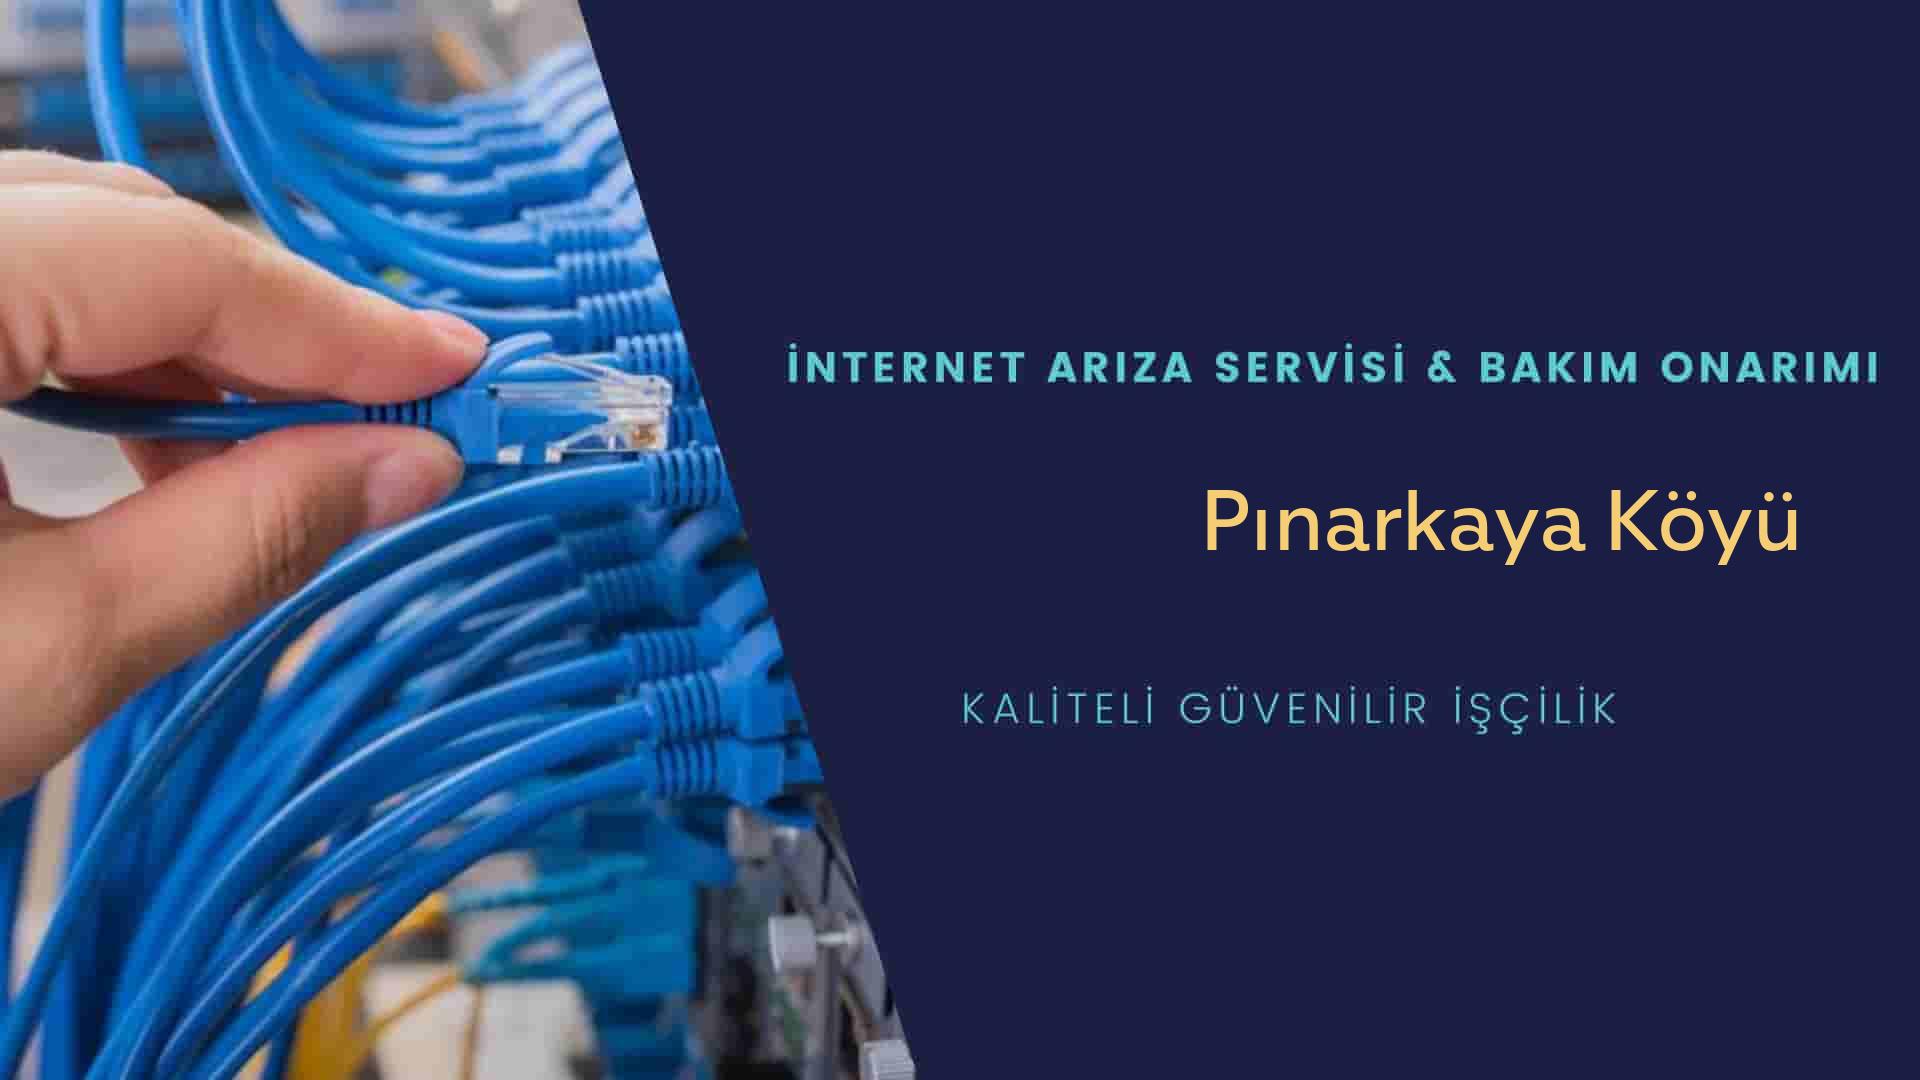 Pınarkaya Köyü internet kablosu çekimi yapan yerler veya elektrikçiler mi? arıyorsunuz doğru yerdesiniz o zaman sizlere 7/24 yardımcı olacak profesyonel ustalarımız bir telefon kadar yakındır size.